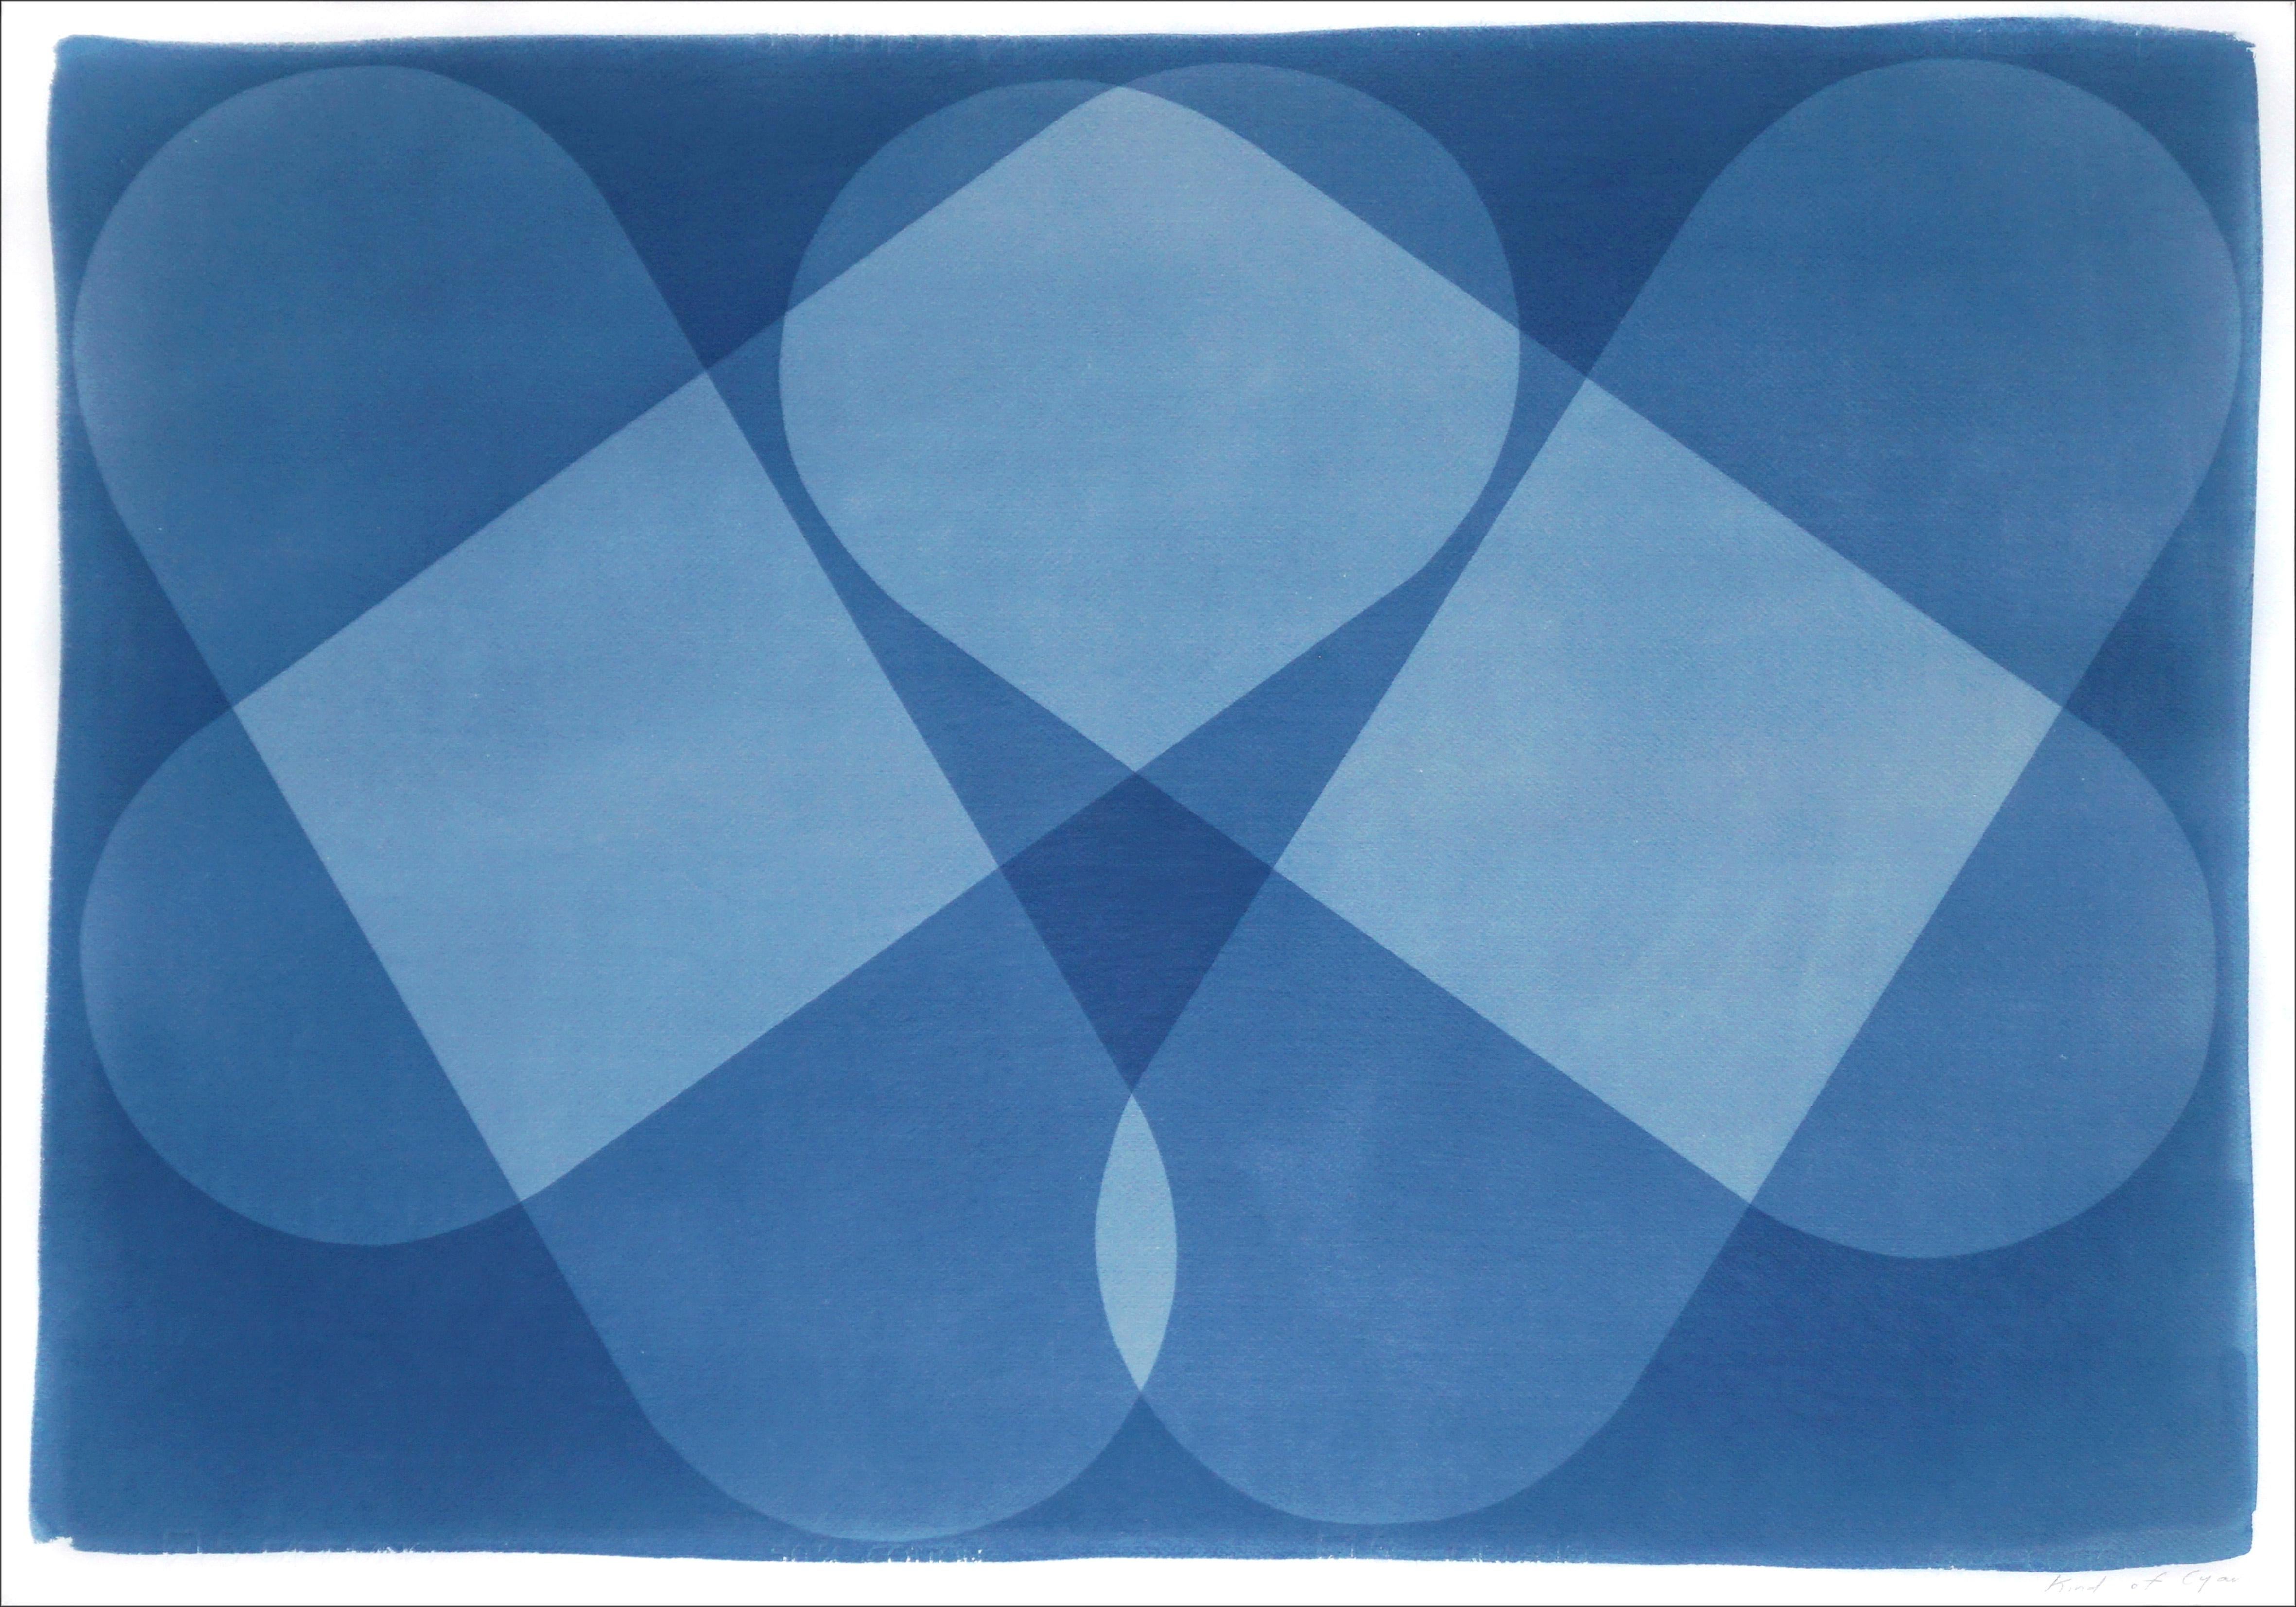 Abstract Photograph Kind of Cyan - Iconique symétrique, blocs aux tons bleus, bâtiments abstraits, cyanotype unique, papier